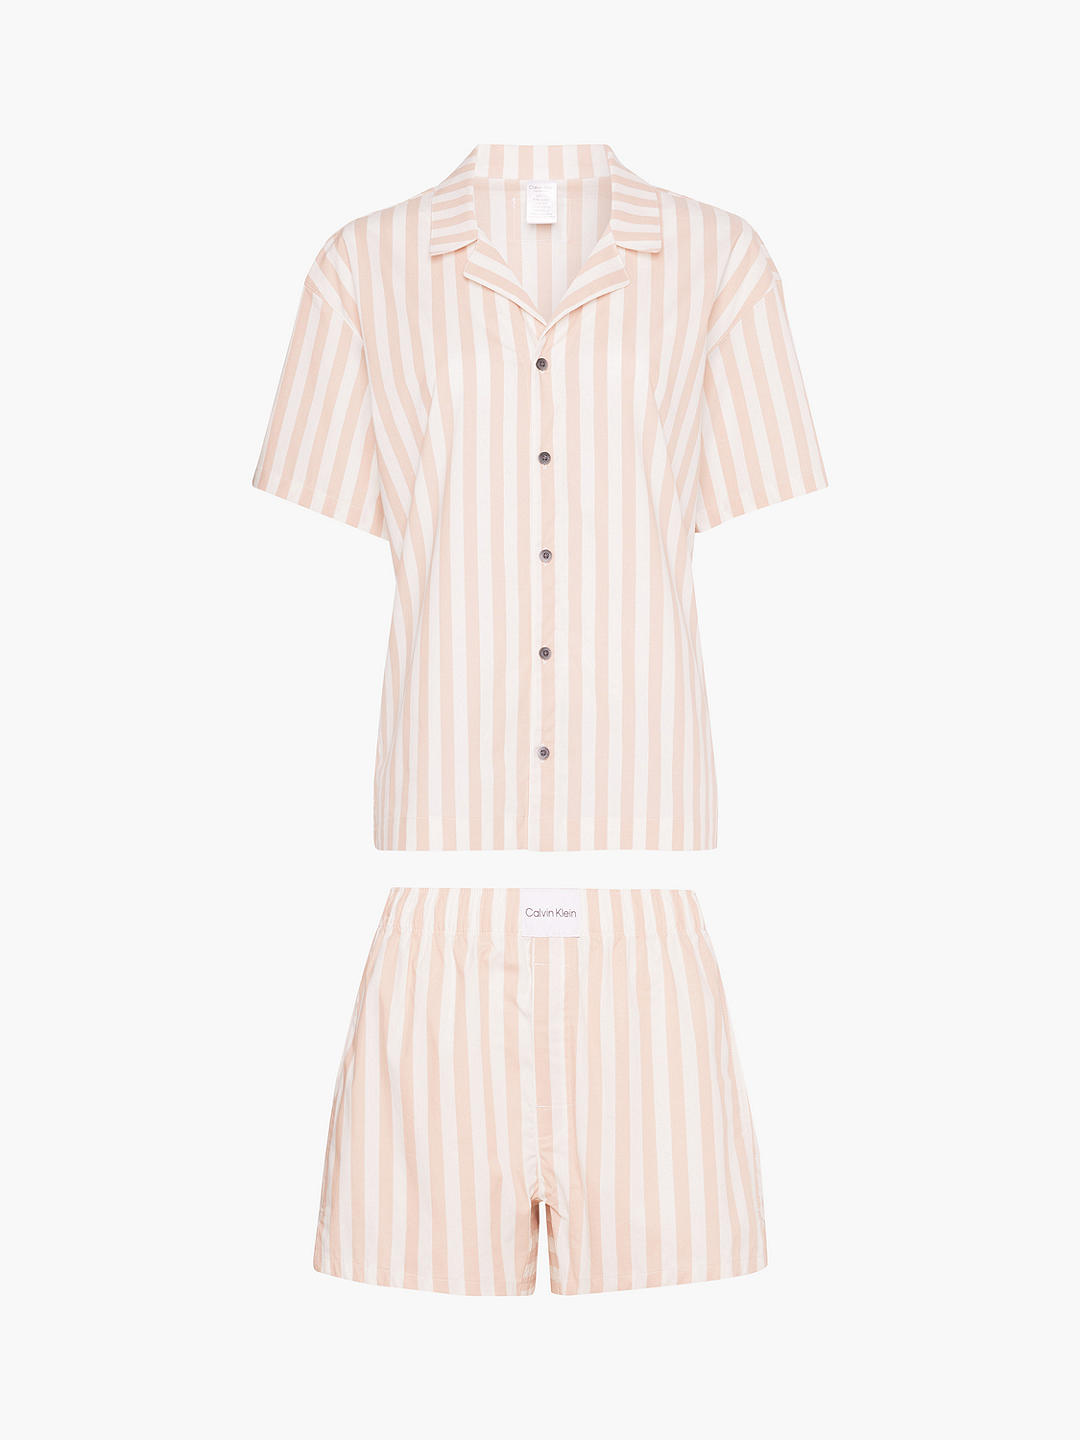 Calvin Klein Striped Short Sleeve Pyjamas, Pink/White at John Lewis ...